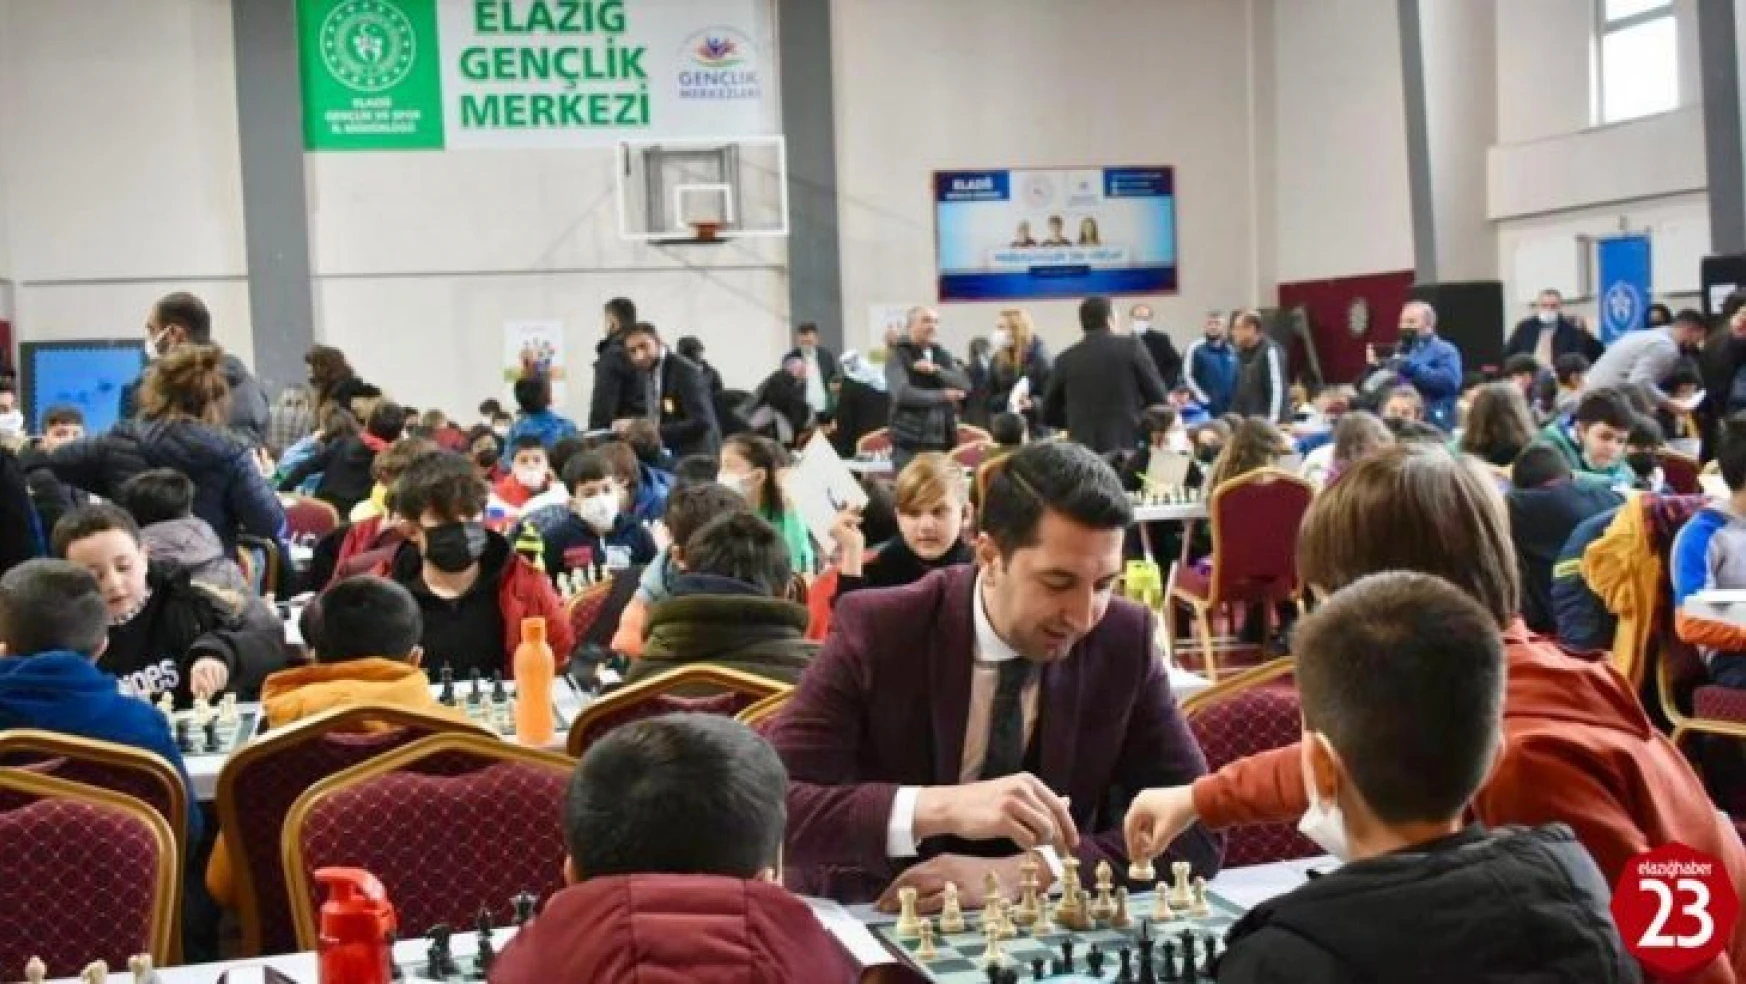 Elazığ'da 480 sporcunun katılımıyla satranç turnuvası başladı